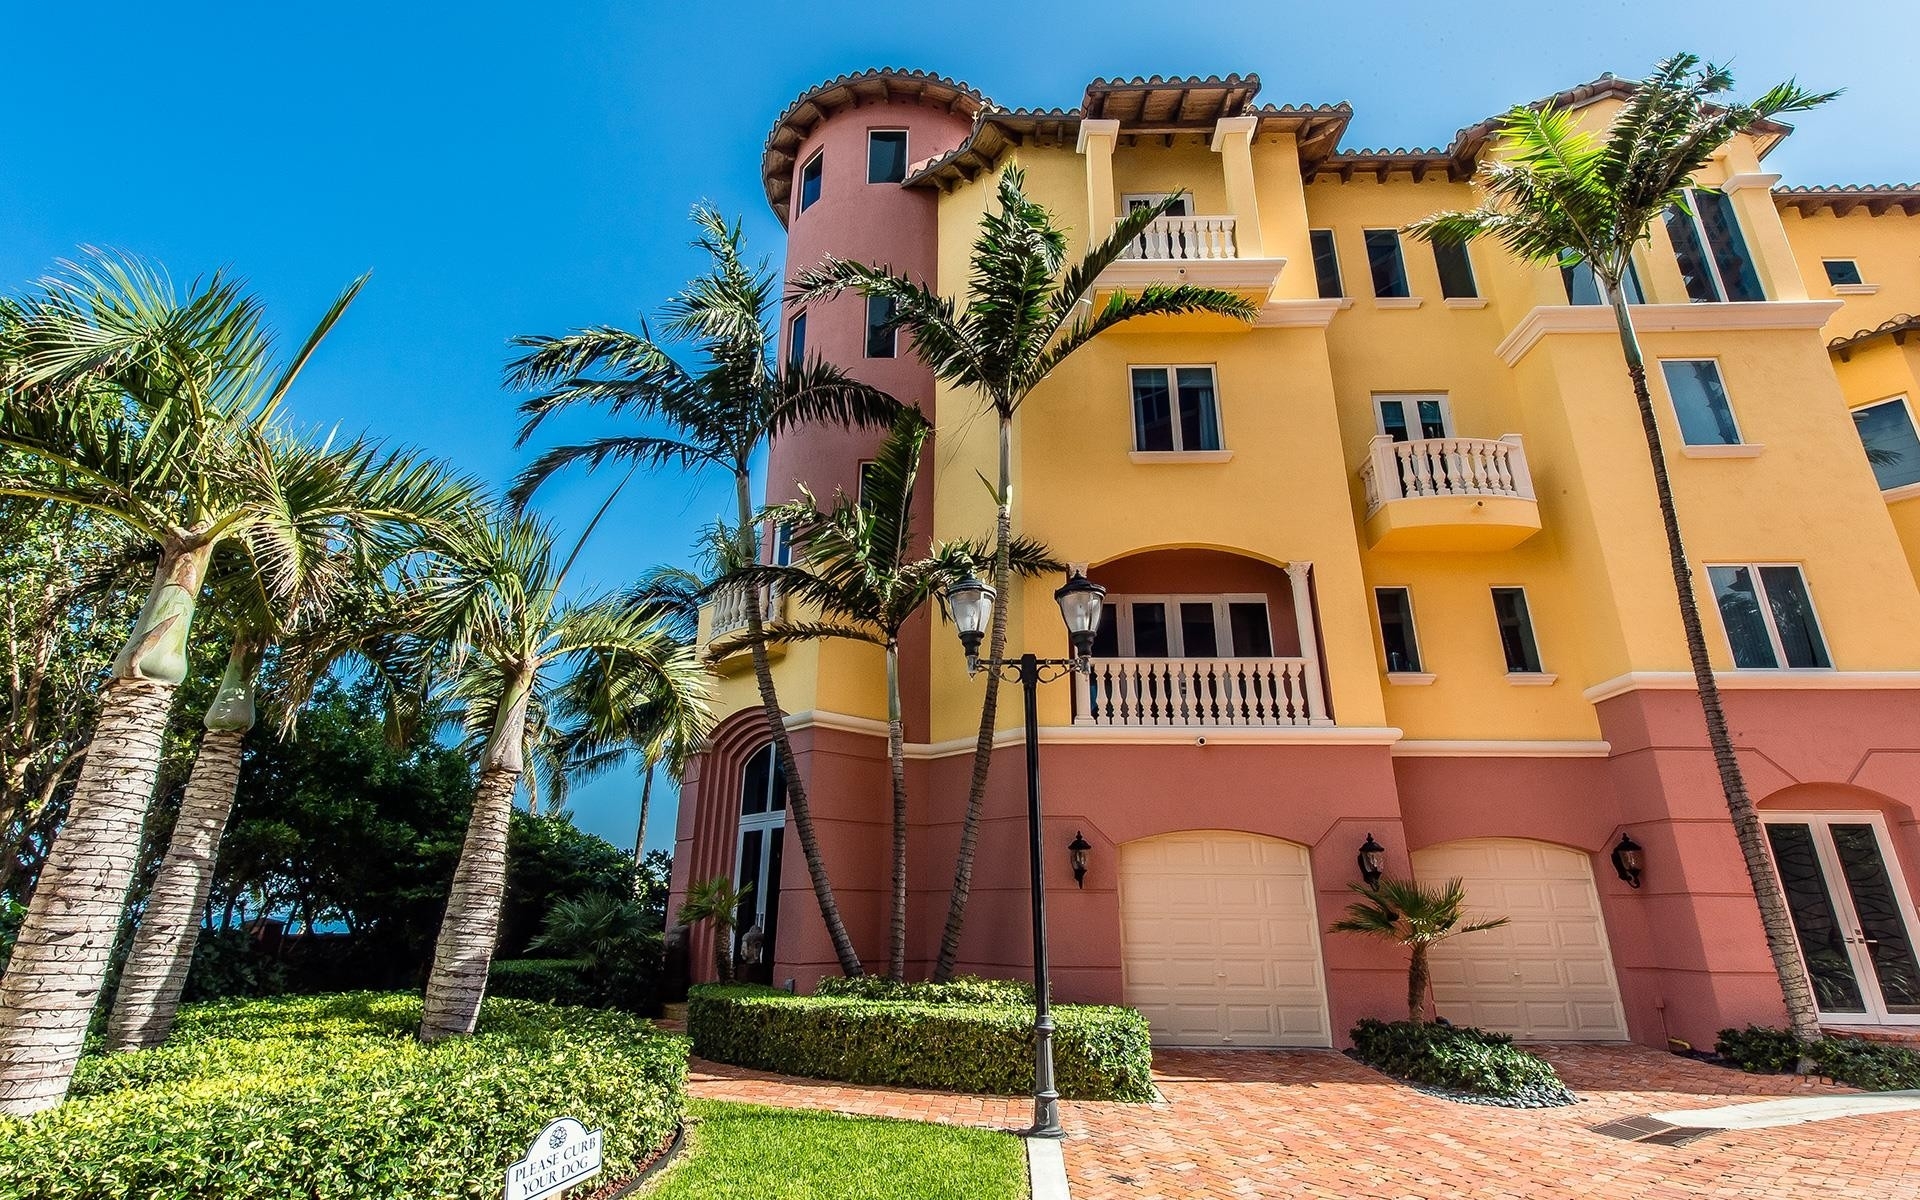 Property at 2180 N Ocean Blvd , I Fort Lauderdale